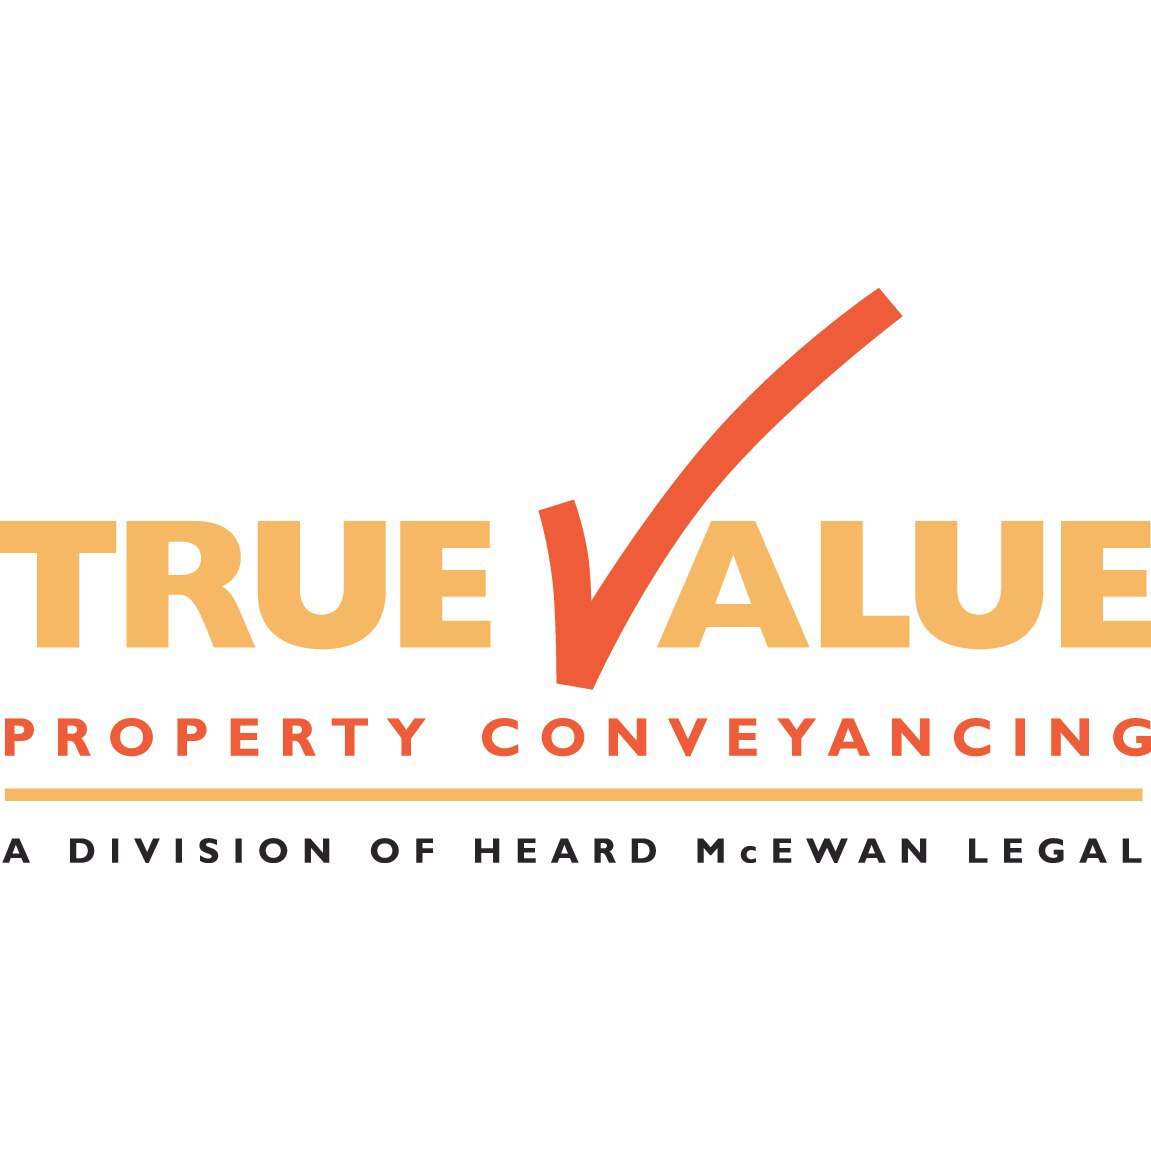 True Value Property Conveyancing Warilla (02) 4254 5200